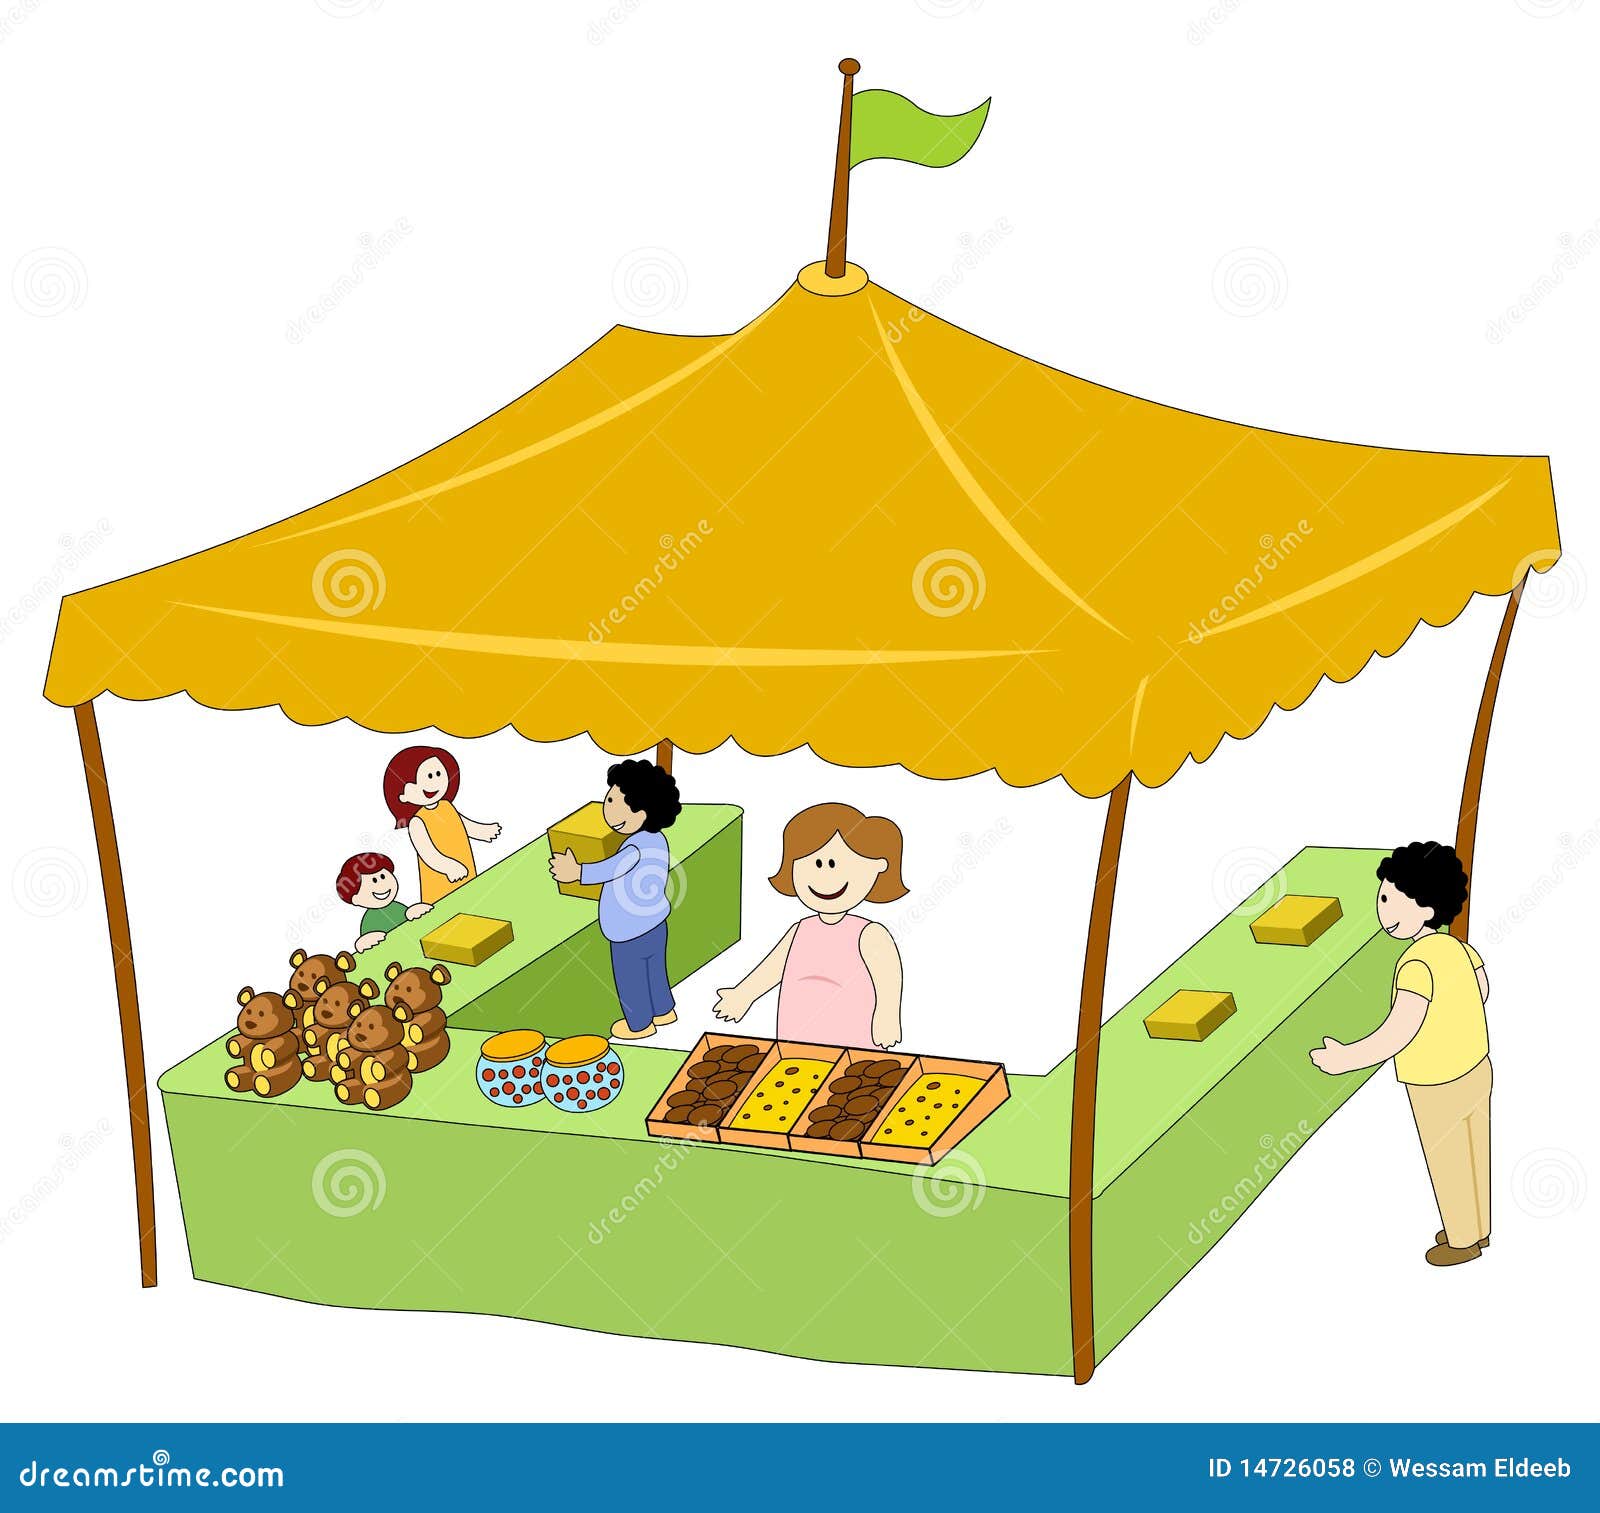 Торговая палатка рисунок для детей